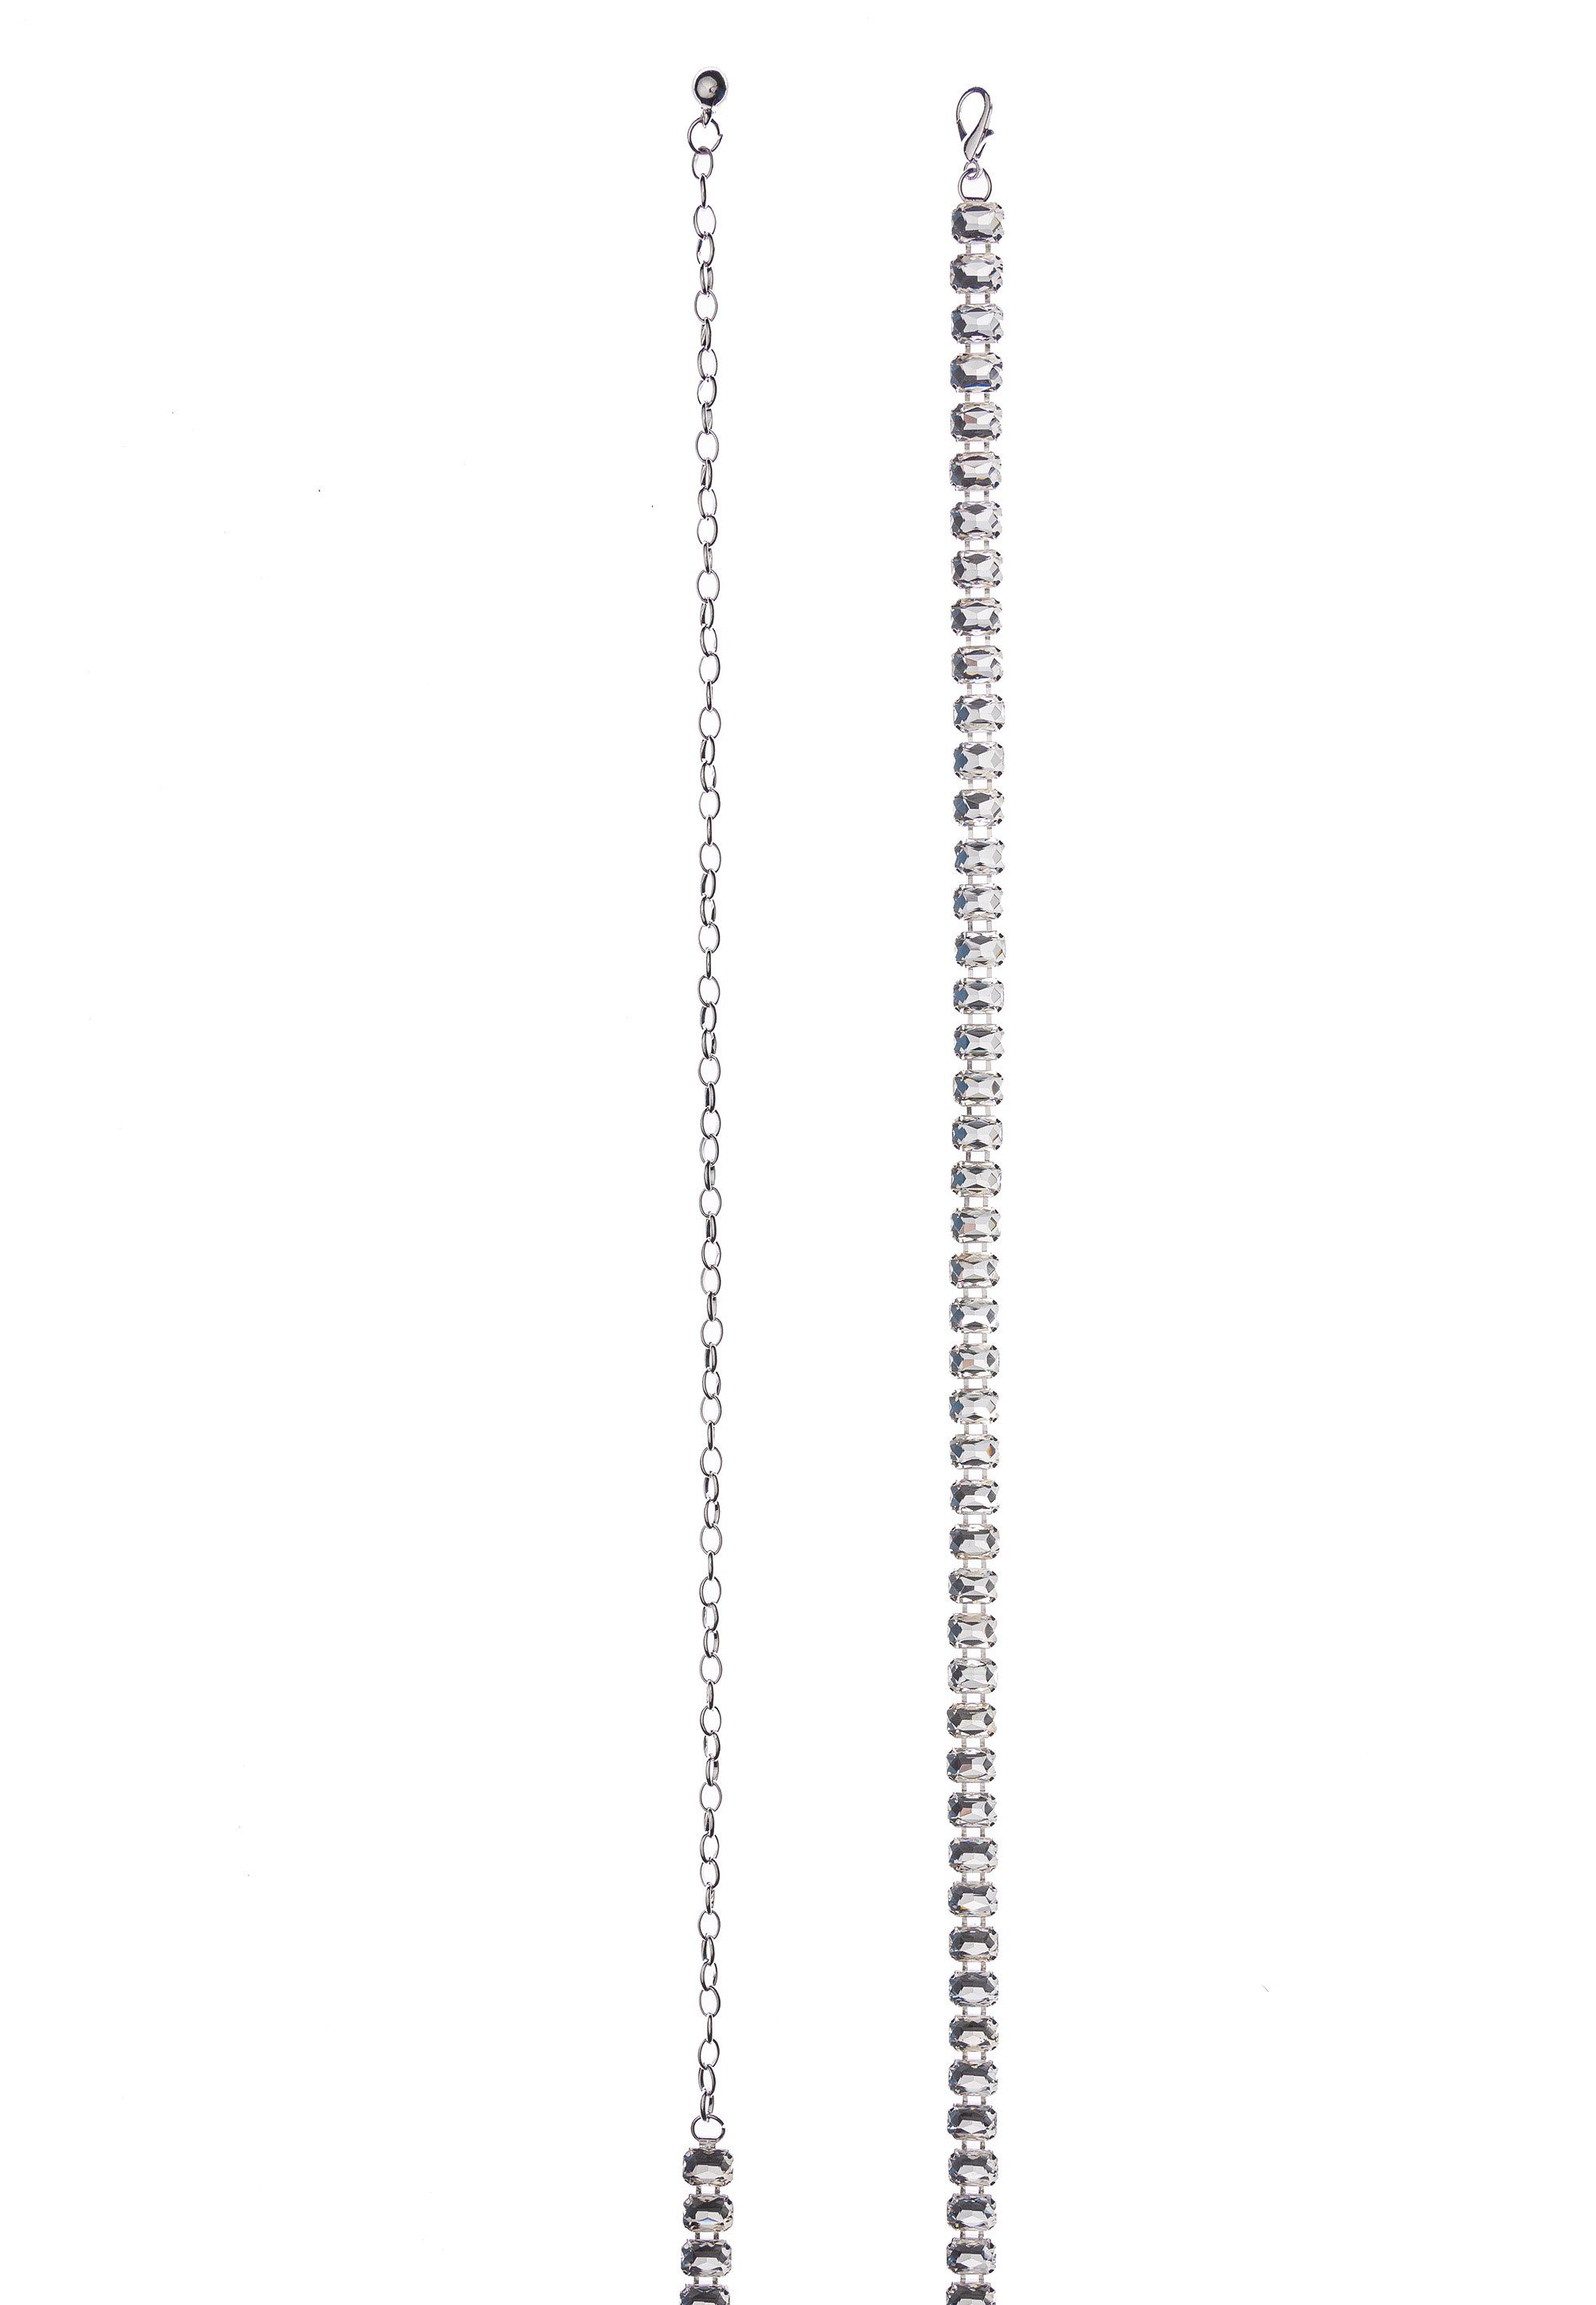 Hüftkette Kettengürtel mit Straßsteinen Taillenkette im Design edlen funkelnden Accessoires Cassandra